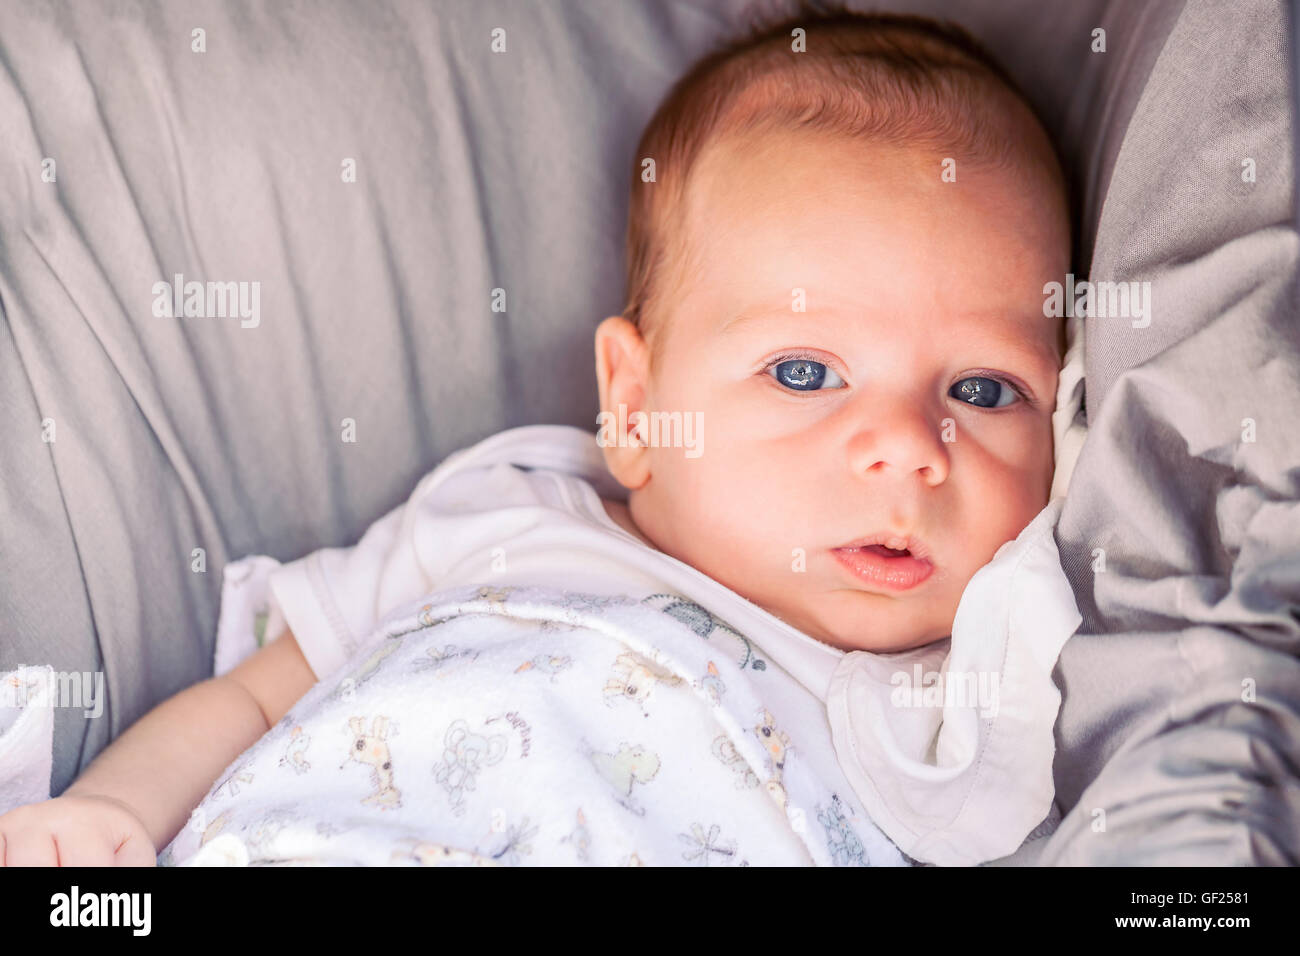 Portrait Of Cute 4 mois Bébé garçon avec les yeux bleus puissants assis dans la poussette Banque D'Images